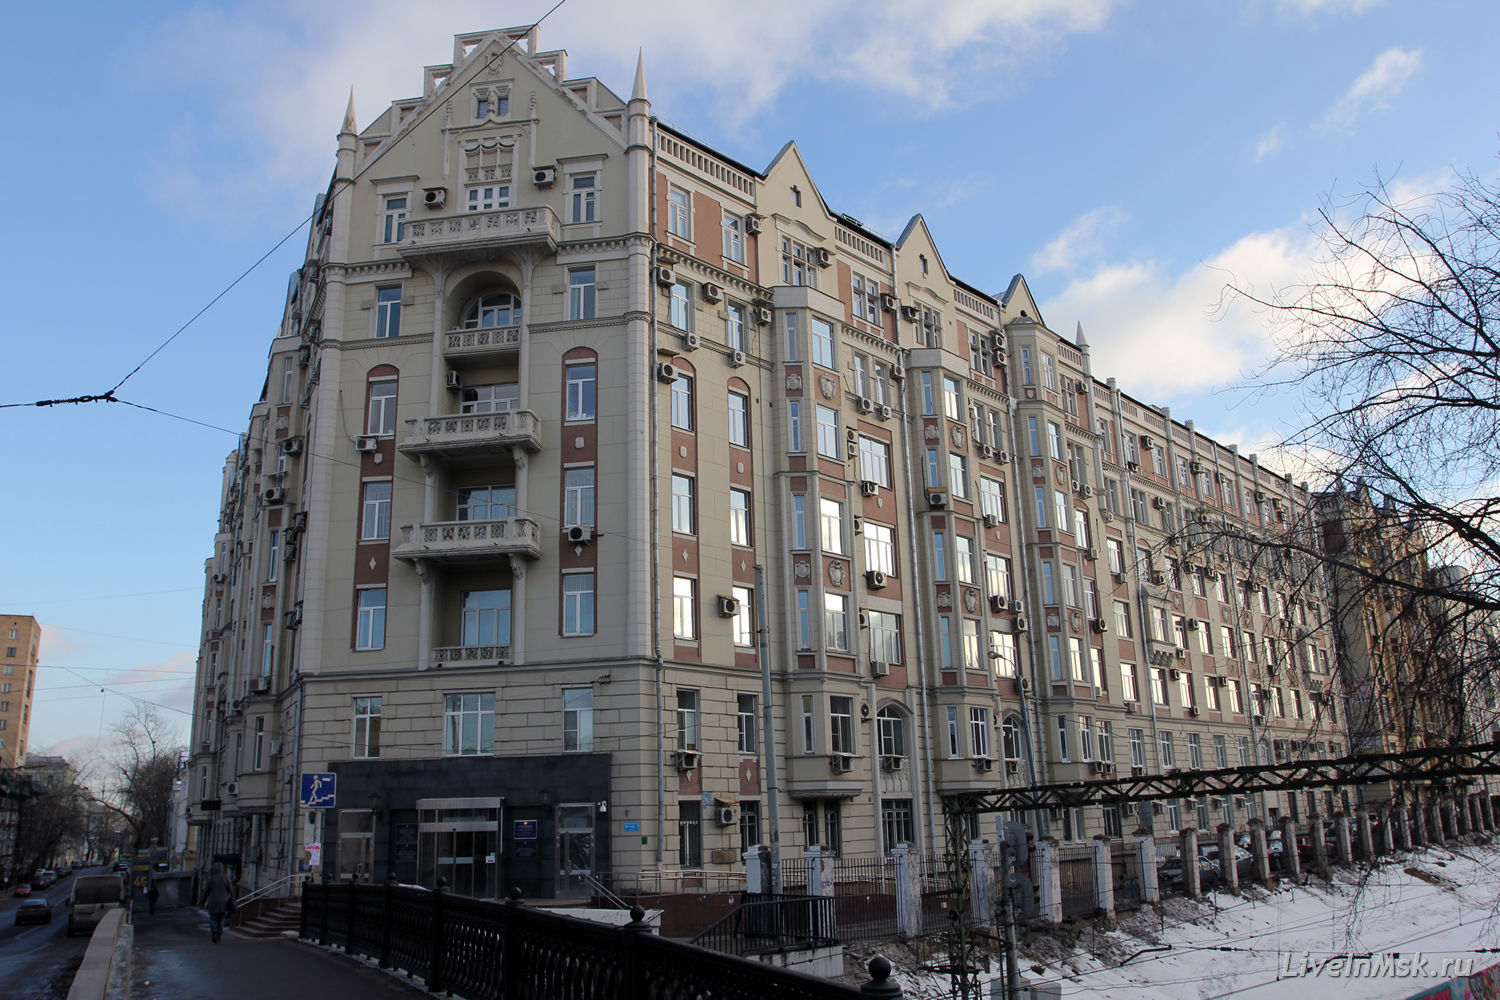 Доходный дом Московского Басманного Товарищества, фото 2015 года